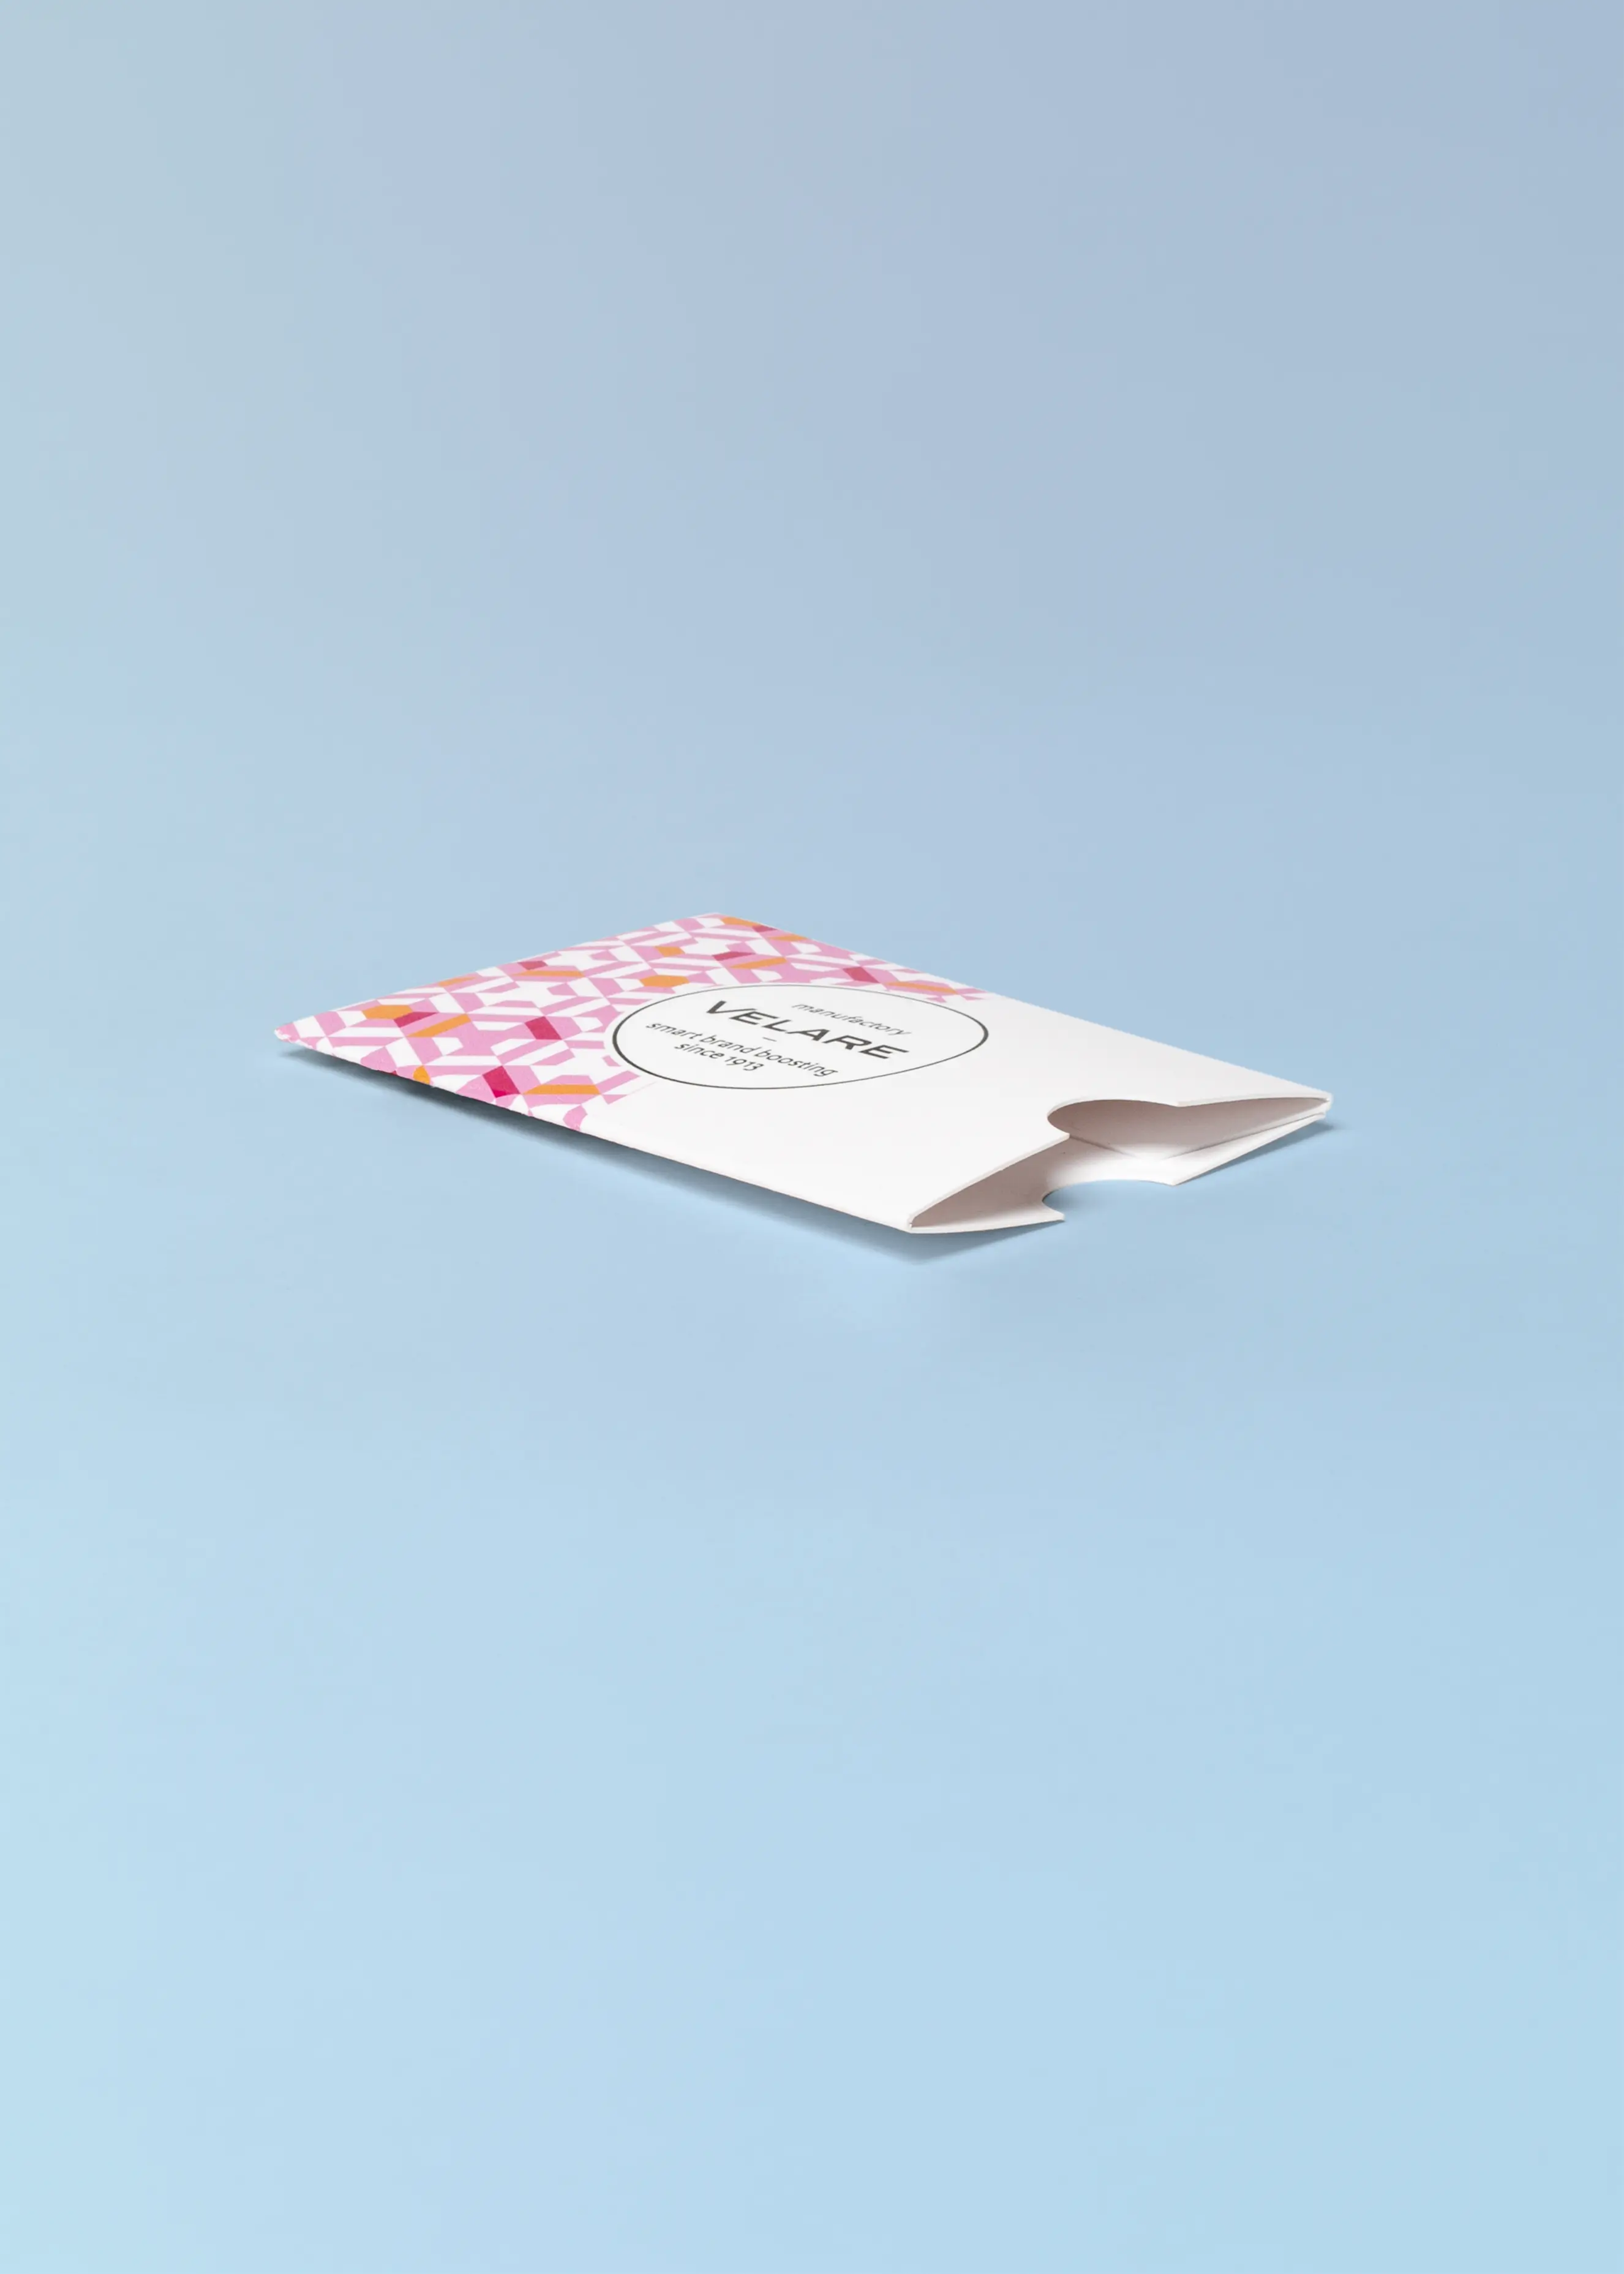 Kartenhülle ohne Verschluss, liegend, rosa Muster, blauer Hintergrund